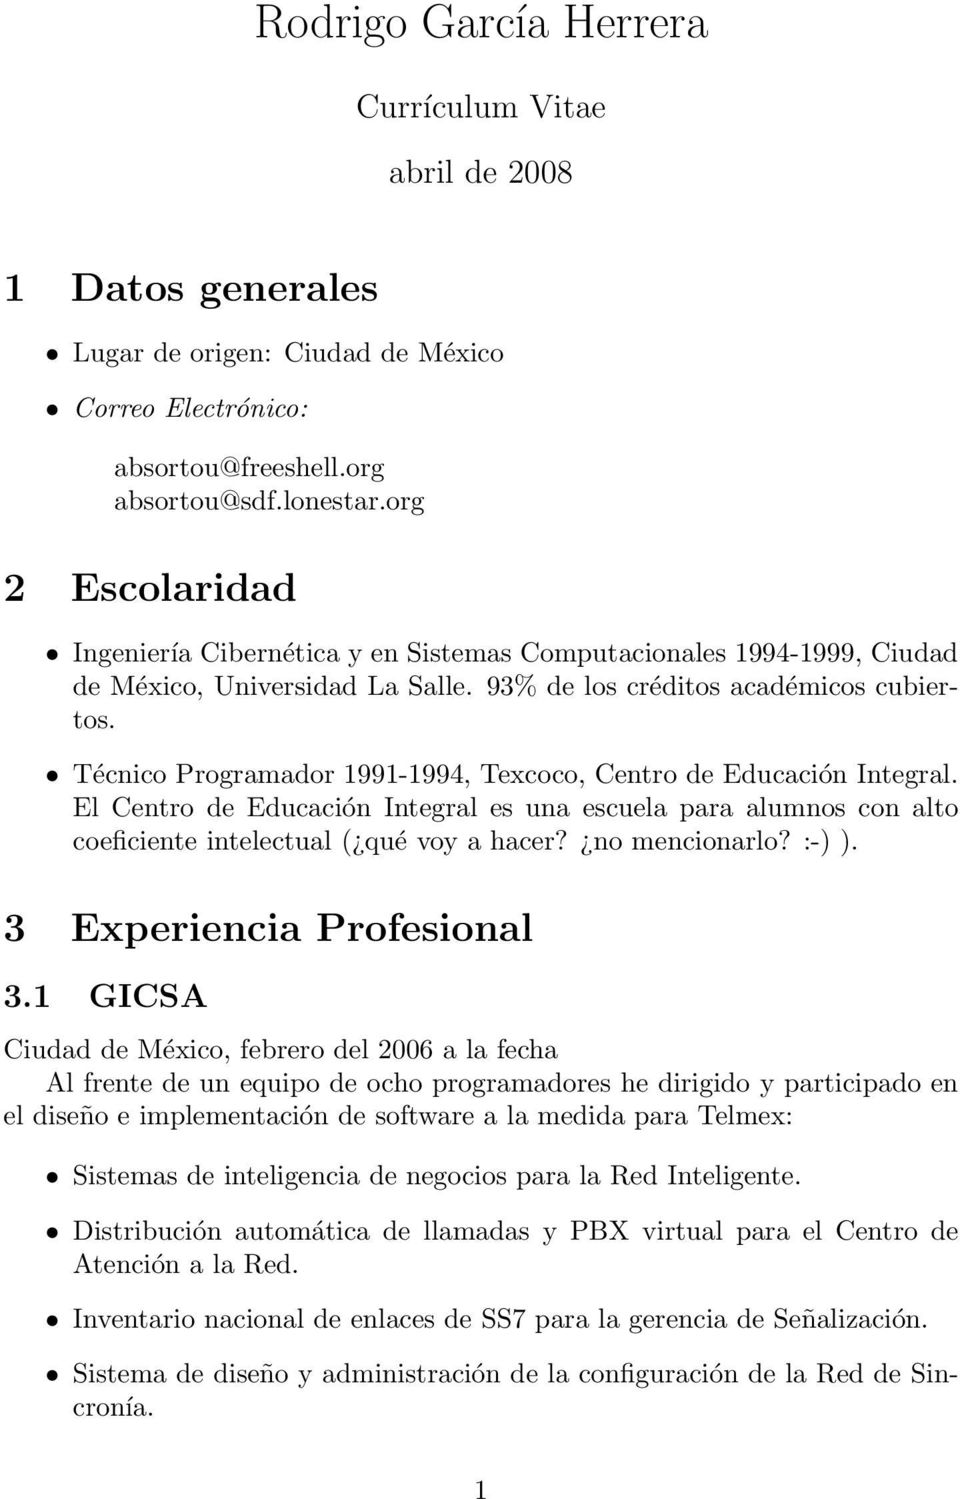 Técnico Programador 1991-1994, Texcoco, Centro de Educación Integral. El Centro de Educación Integral es una escuela para alumnos con alto coeficiente intelectual ( qué voy a hacer? no mencionarlo?